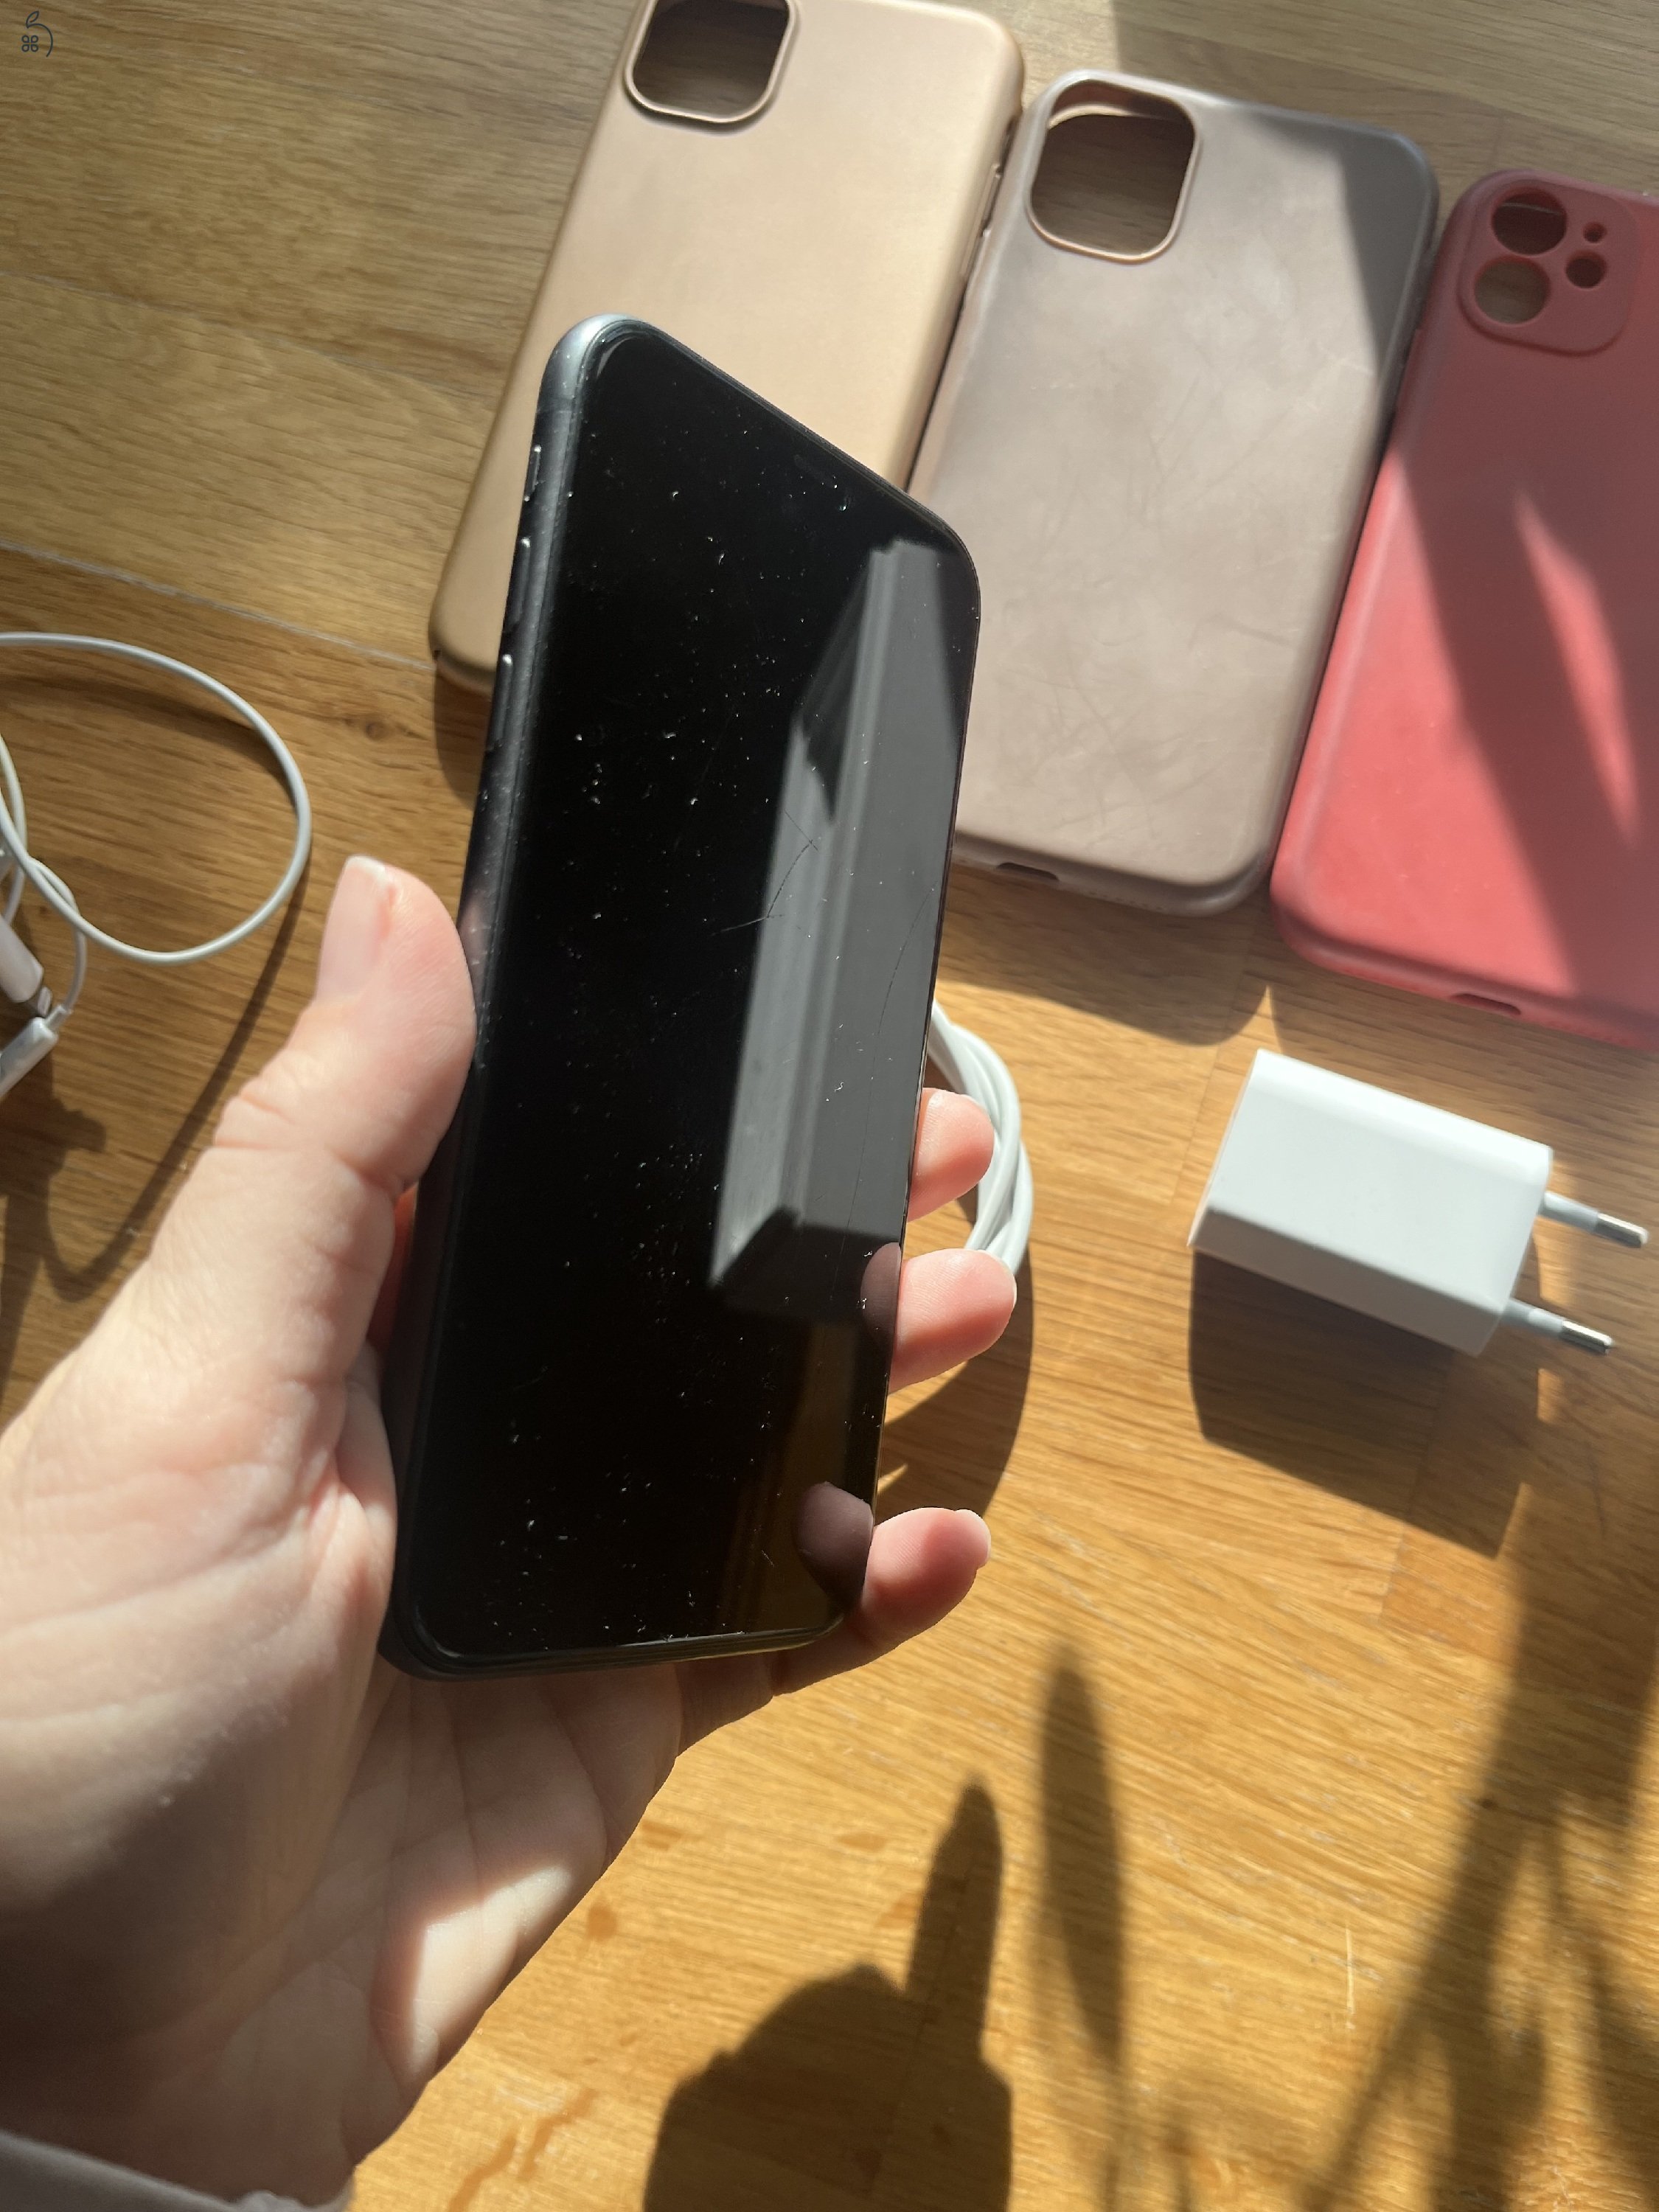 Iphone 11, 128 gb, fekete, független telefon